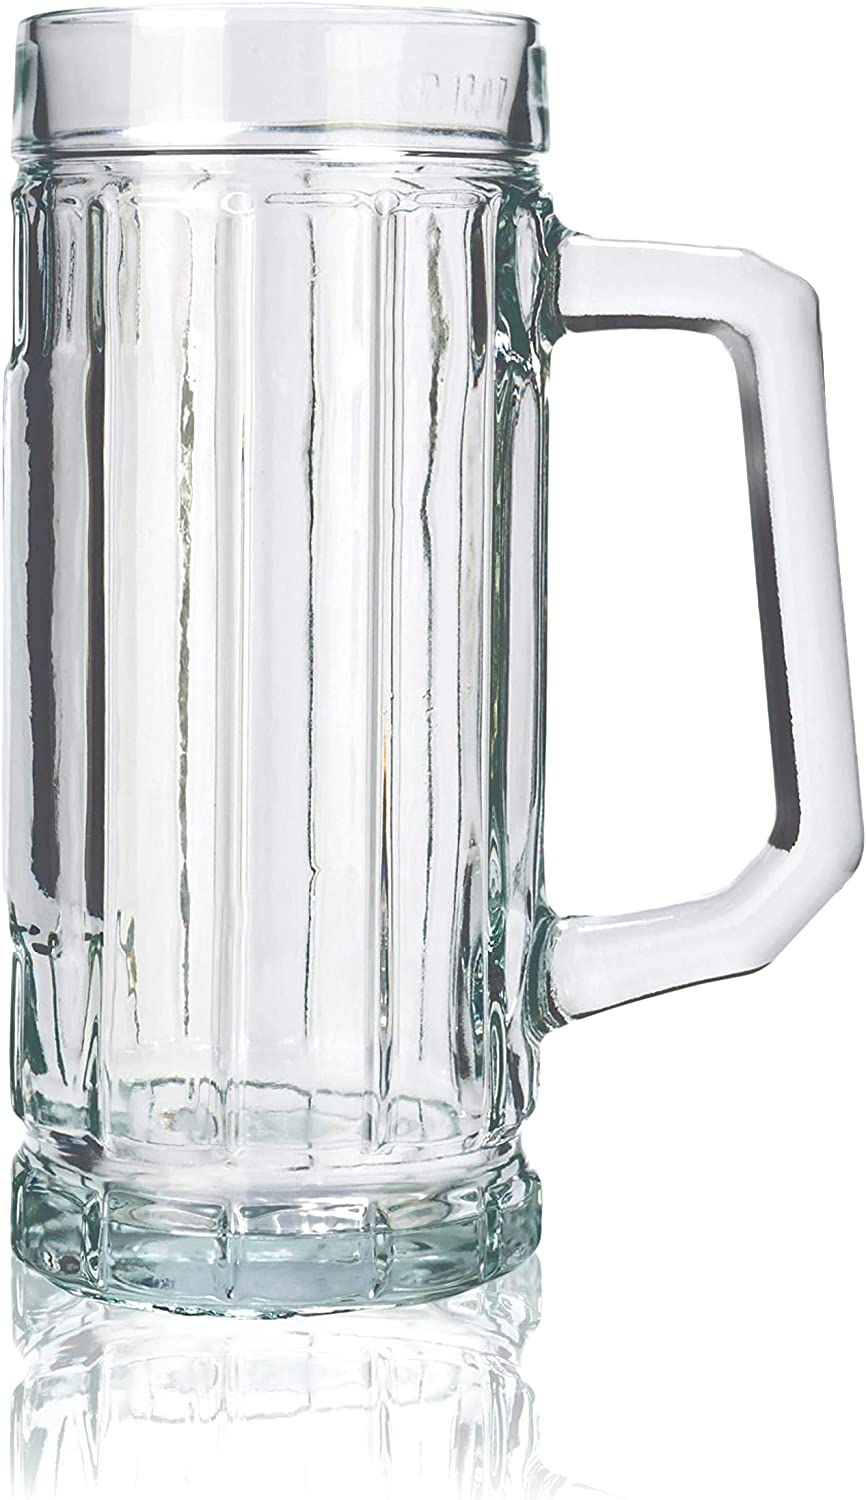 Stölzle Oberglas Gambrinus Beer Mugs / Set of 6 Beer Mugs 0.4 Litres / Sturdy Beer Jug / Beer Glasses 0.4 Litres Made of Soda Lime Glass / Beer Mugs 0.4 Litres Dishwasher Safe